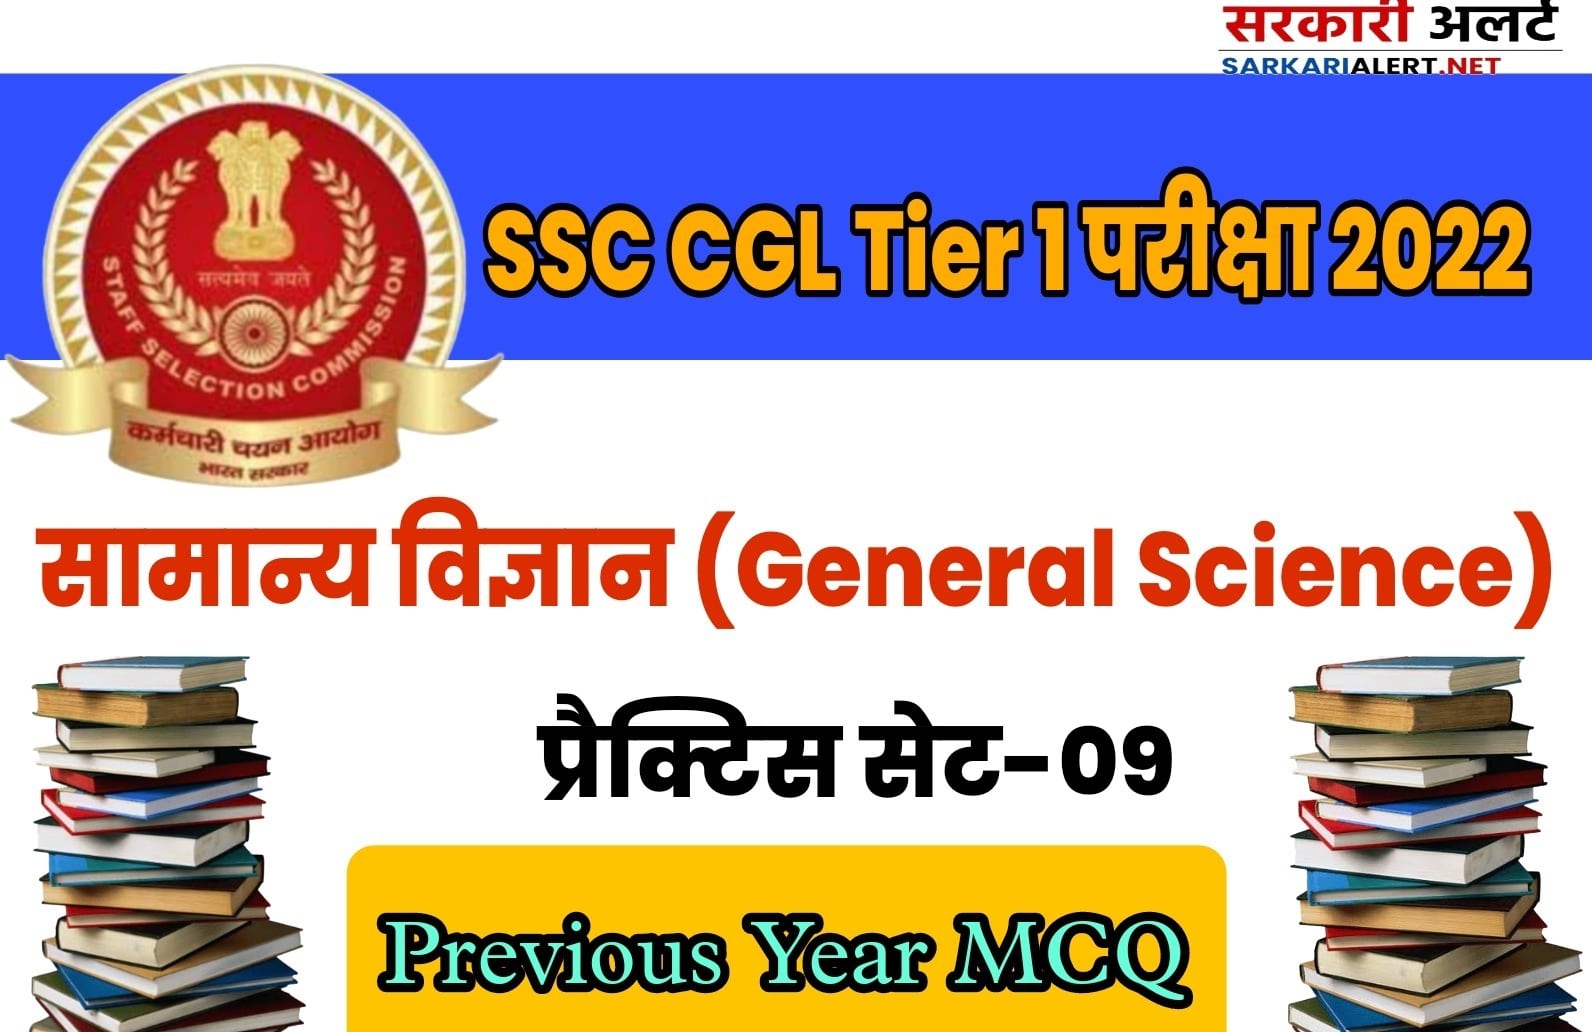 SSC CGL Tier I Exam 2022 General Science Practice Set 09 | परीक्षा में सफलता पाने के लिए अवश्य अध्ययन करें